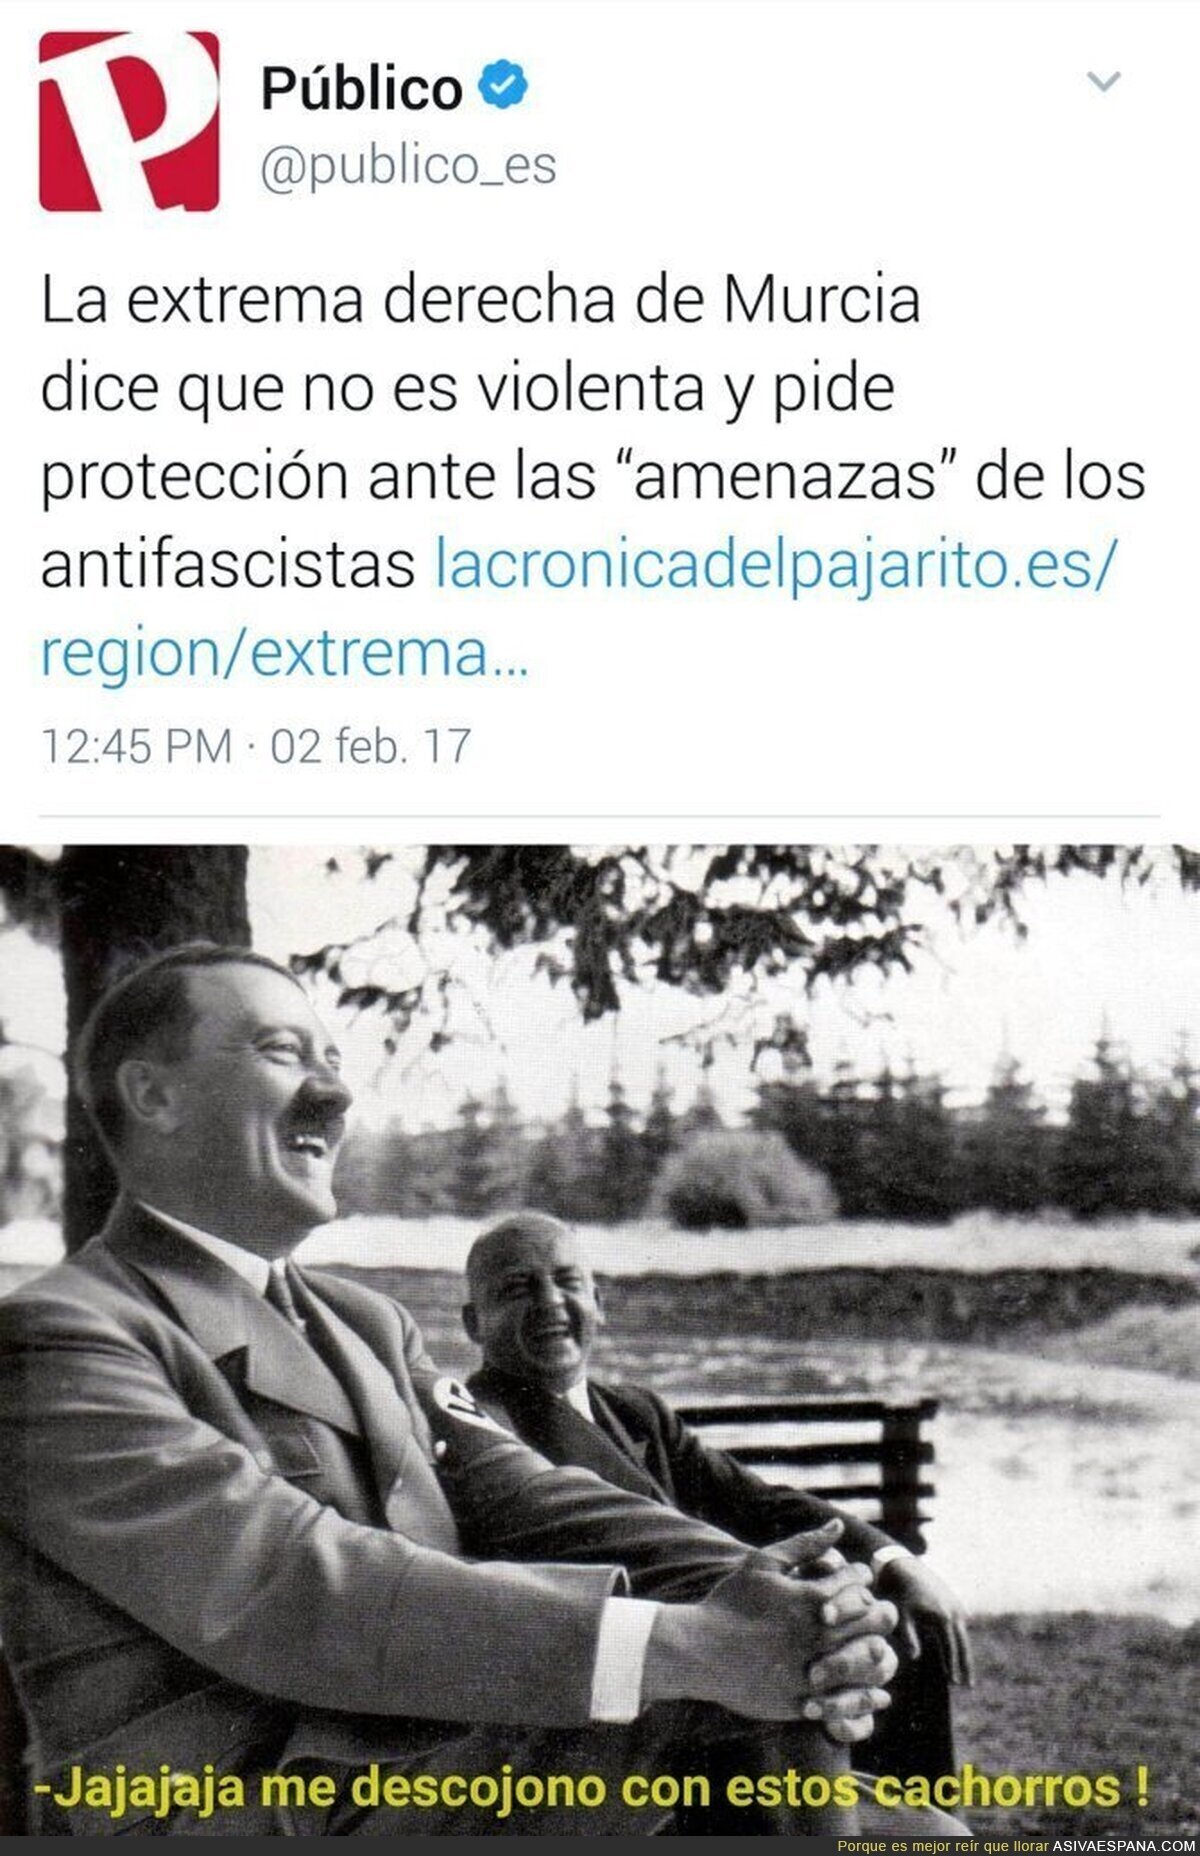 Los nazis piden protección en Murcia